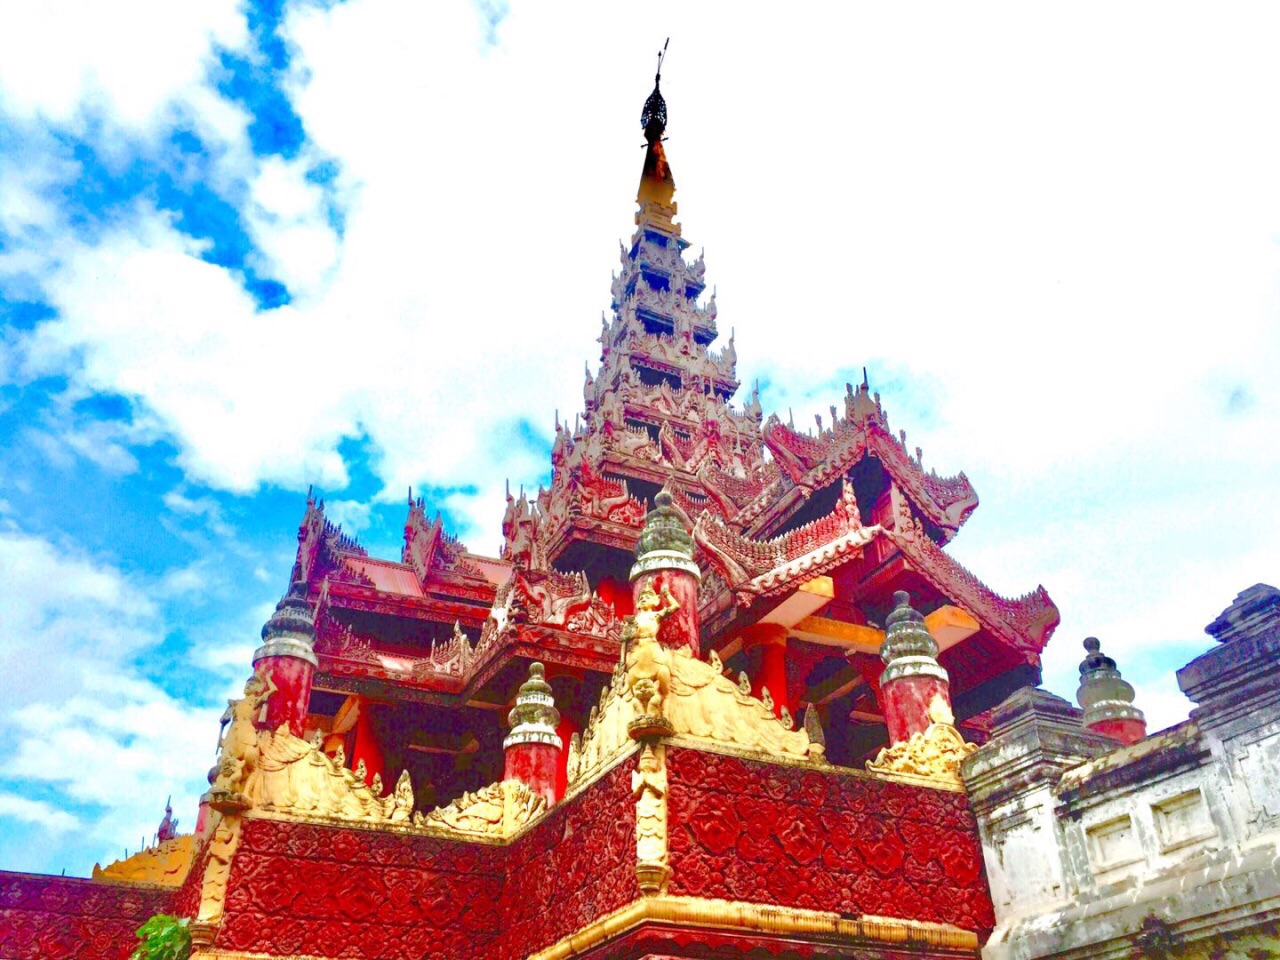 缅甸盛产柚木。勃固的旧皇宫，毫无例外，都是由柚木建成的。棕红的外墙，金色的柱子，宫殿在阳光下熠熠发光